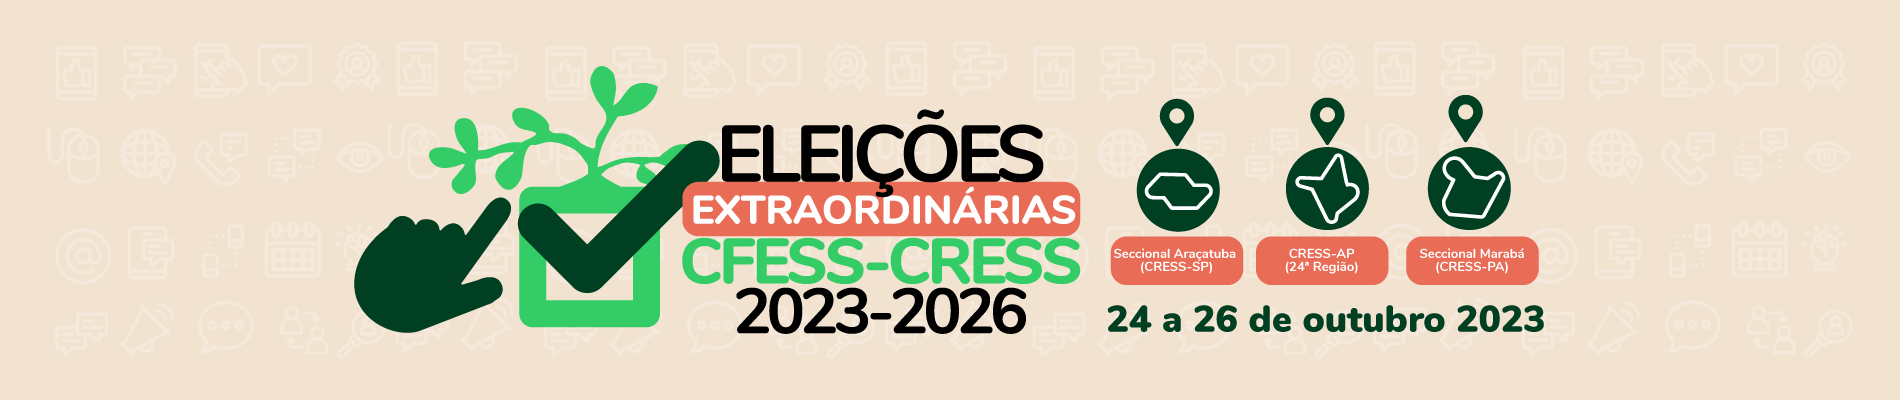 Eleições Extraordinárias CFESS-CRESS: Seccional Araçatuba, Seccional Marabá e CRESS Amapá